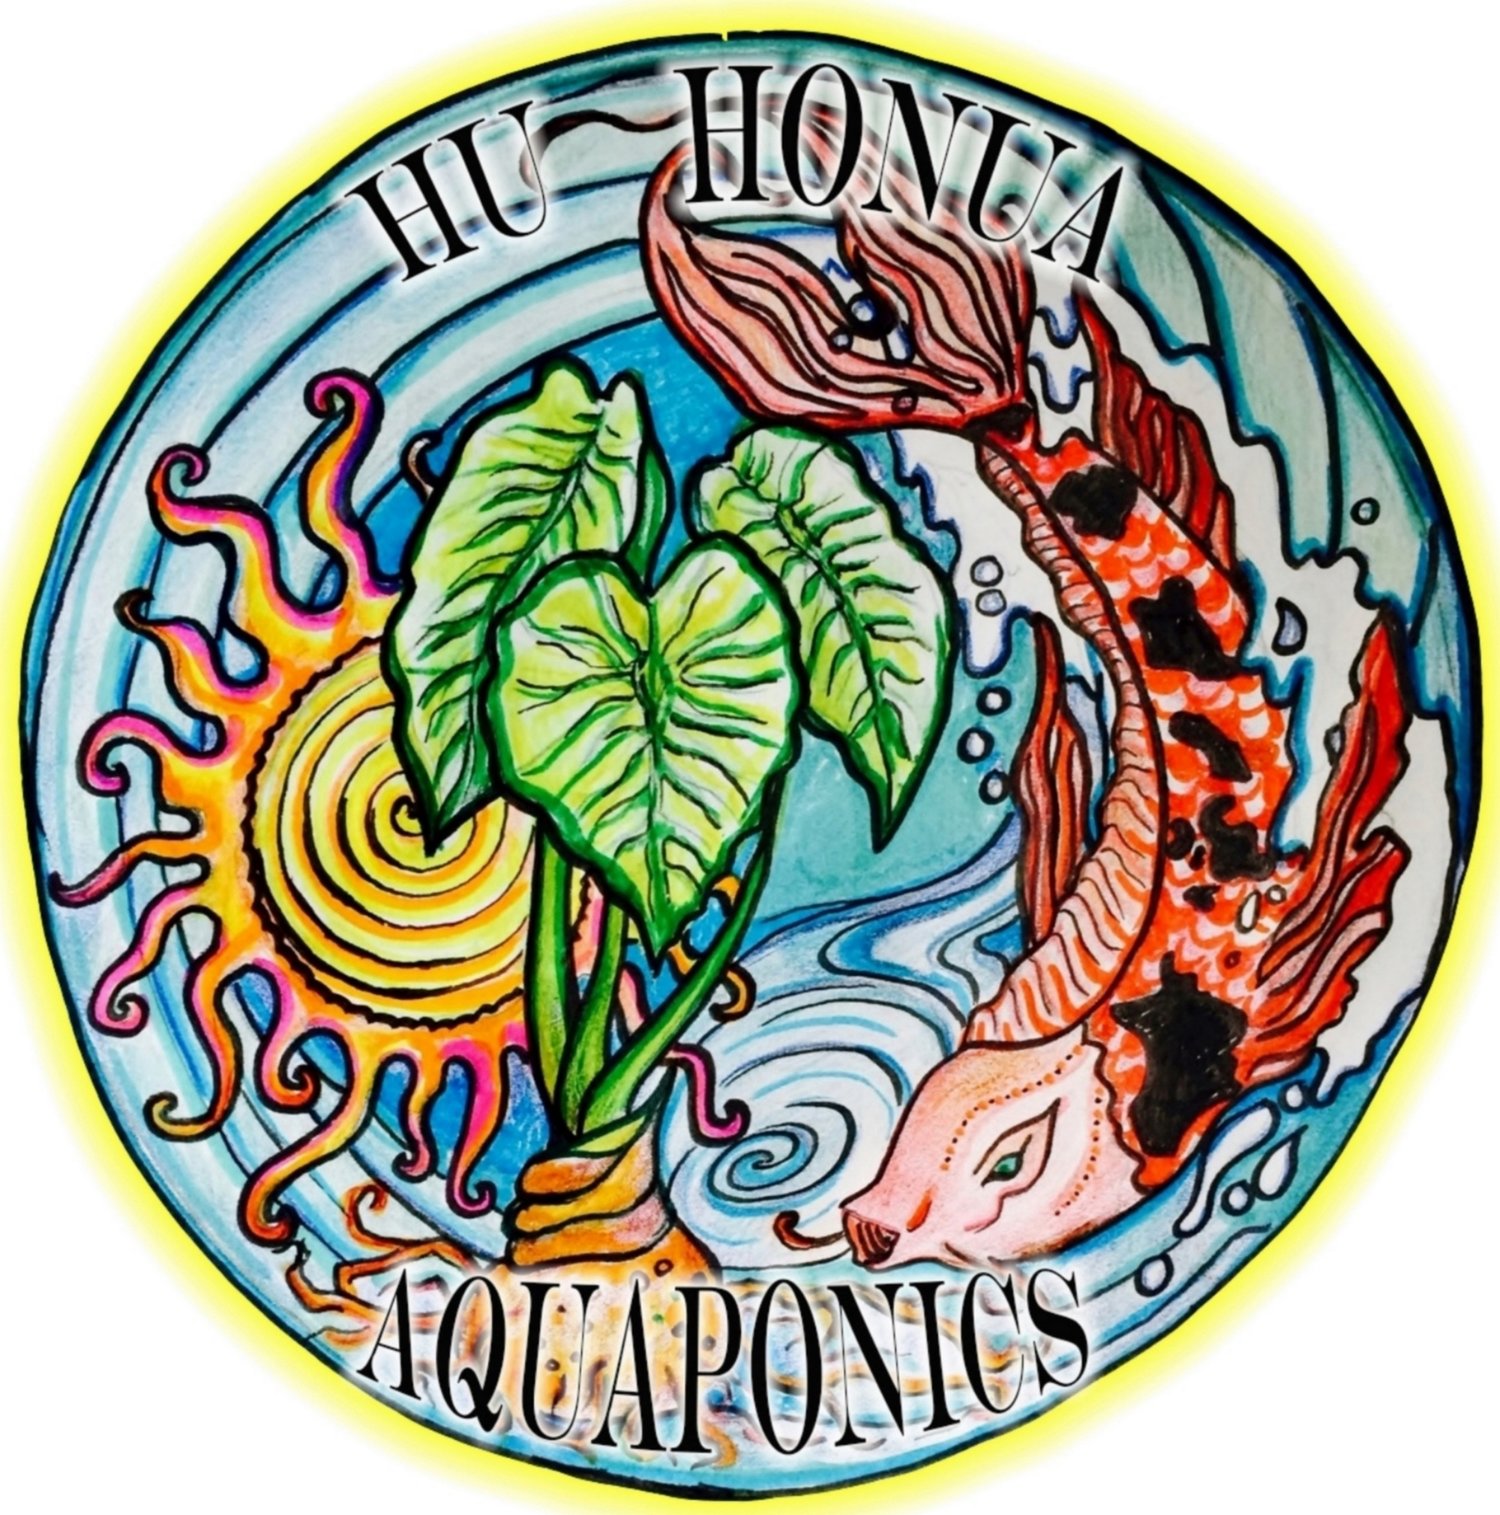 Hu Honua Aquaponics